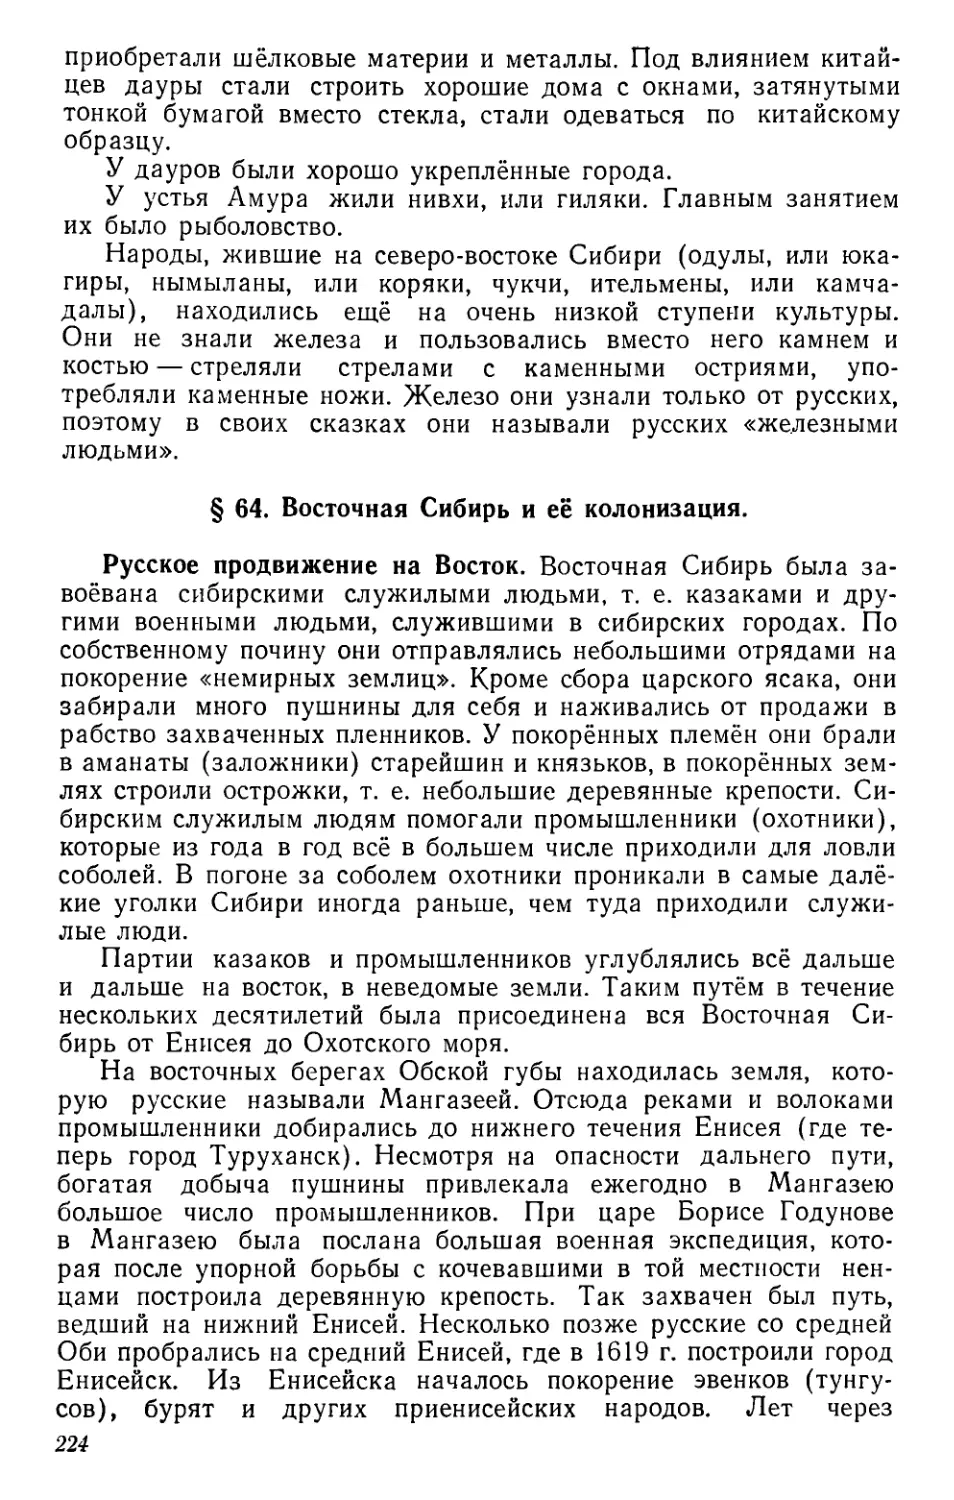 § 64. Восточная Сибирь и её колонизация